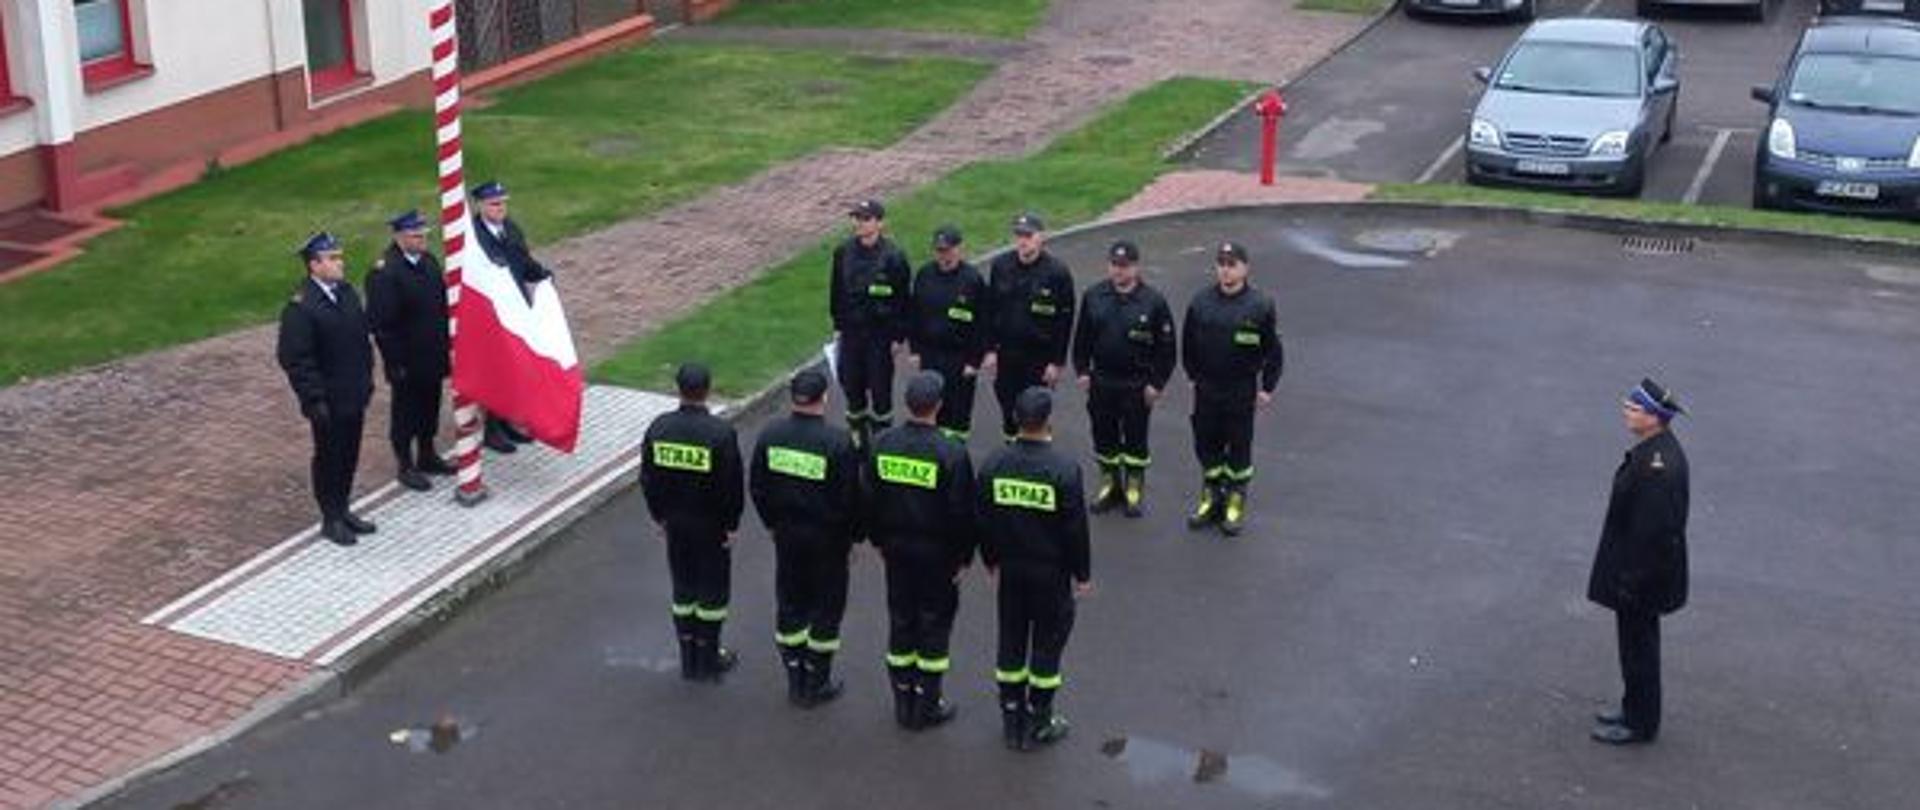 Uroczysta zmiana służby z okazji Narodowego Święta Niepodległości. Strażacy ze zmian służbowych stoją naprzeciwko siebie. Poczet flagowy wciąga flagę państwową na maszt. 